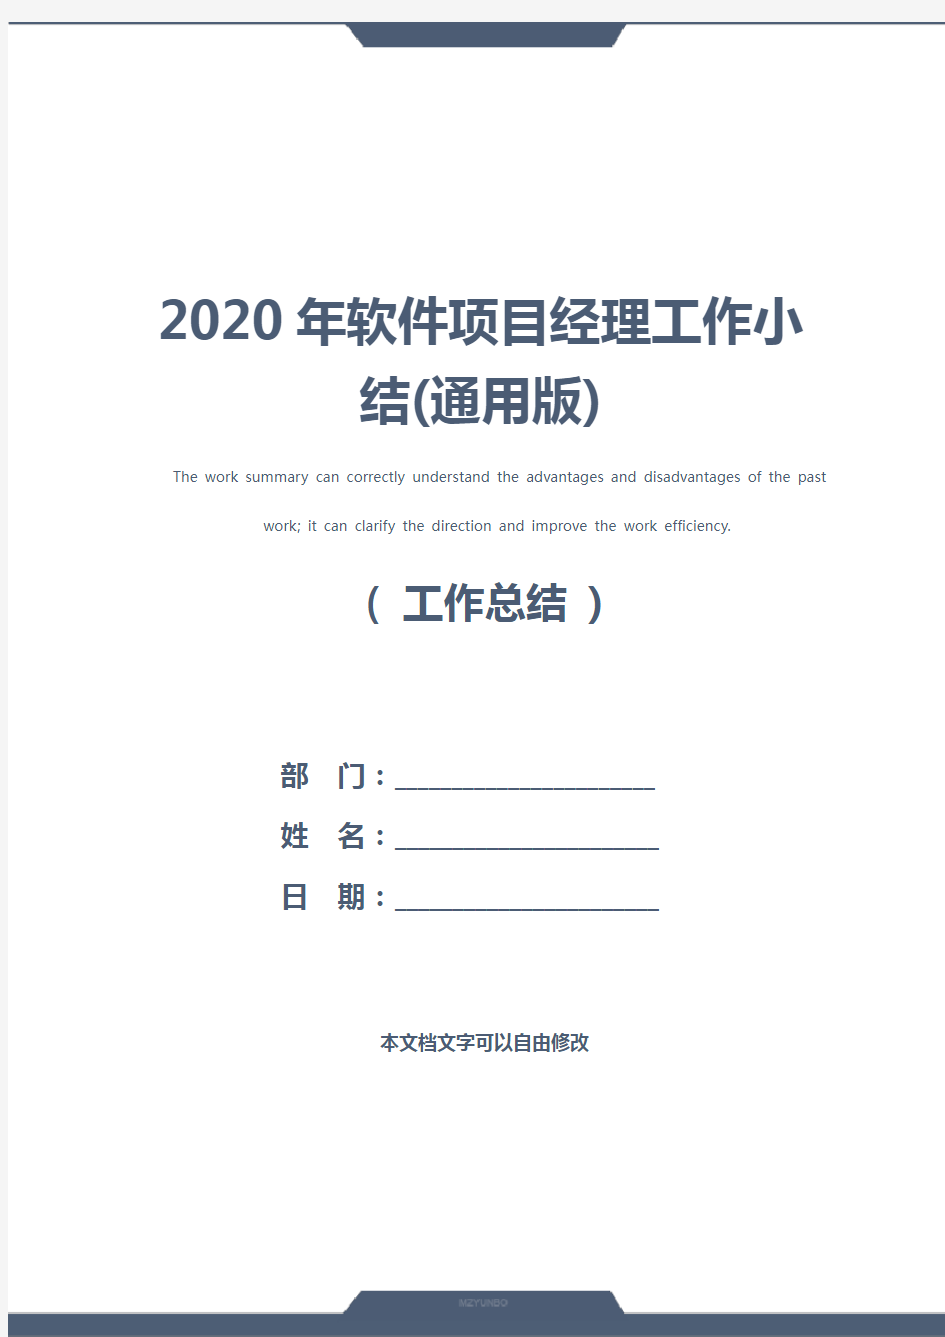 2020年软件项目经理工作小结(通用版)